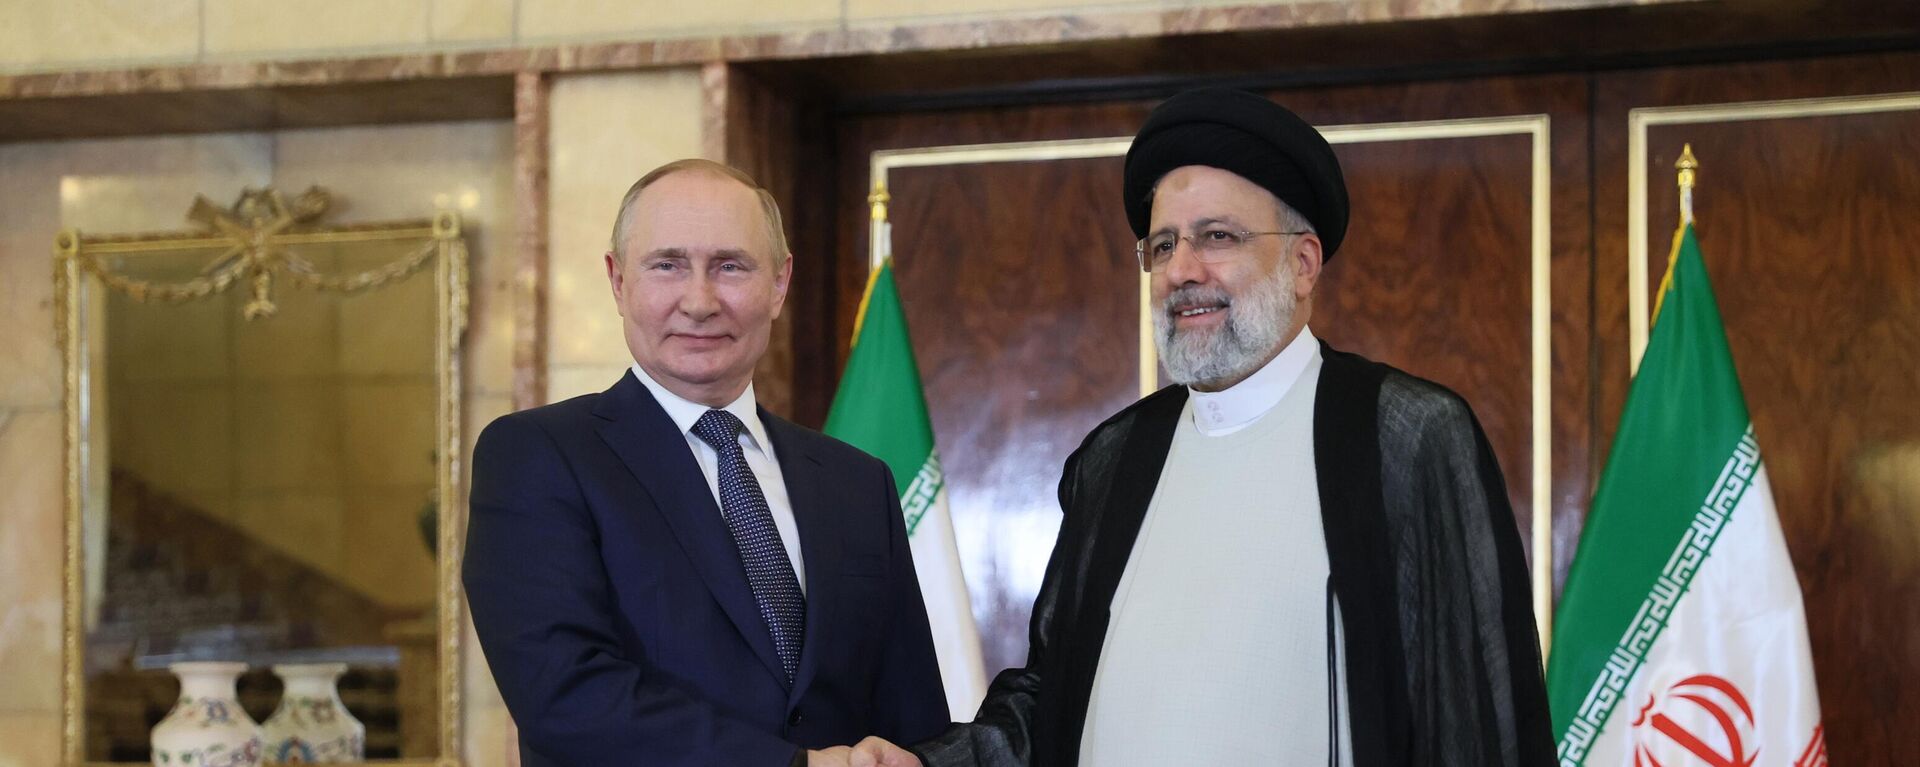 Presidente russo, Vladimir Putin (à esquerda), se reúne com o presidente iraniano, Ebrahim Raisi, em Teerã, em 19 de julho de 2022 - Sputnik Brasil, 1920, 20.09.2022